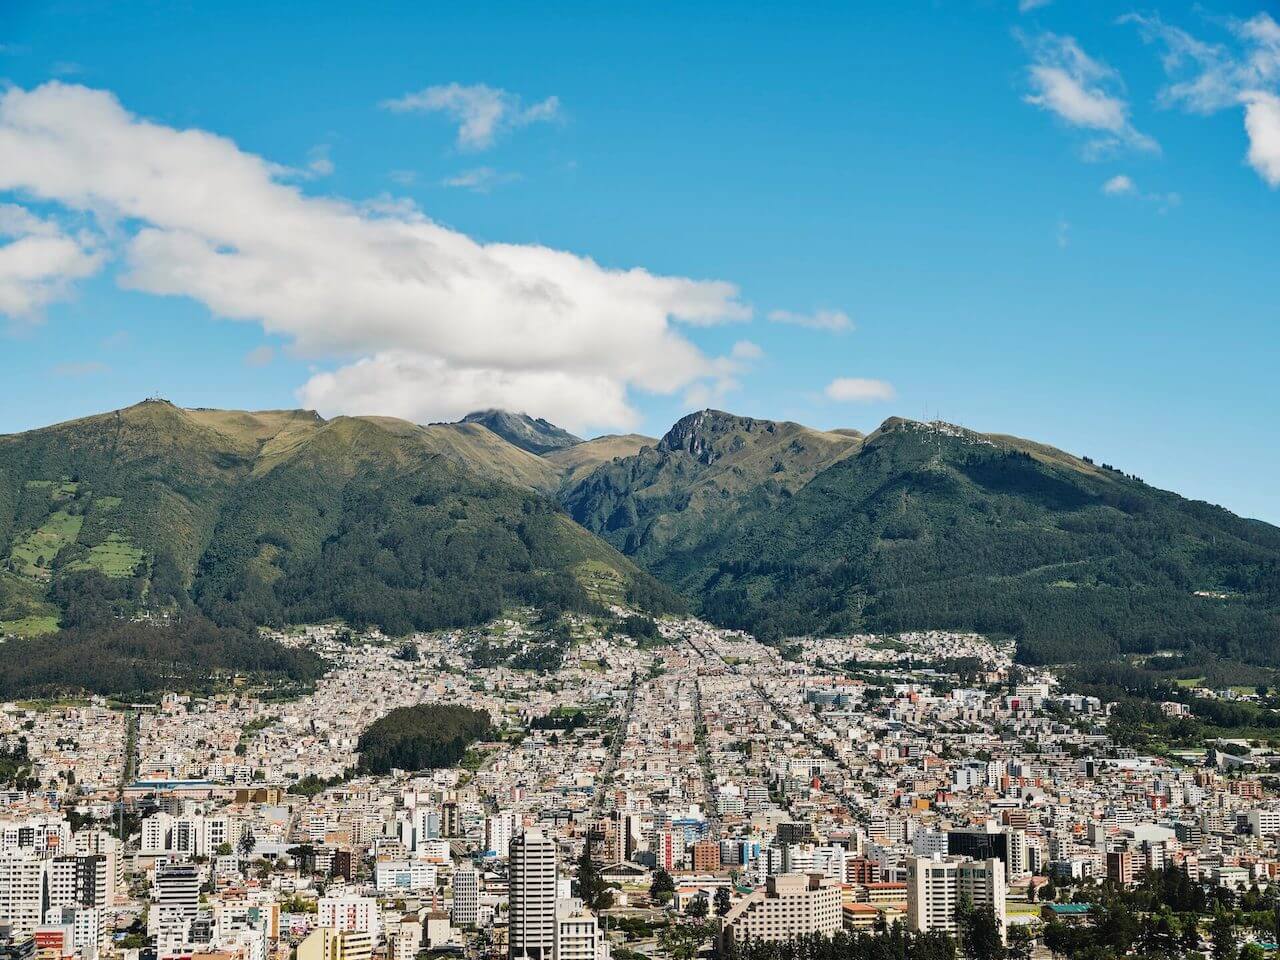  Quito - city skyline